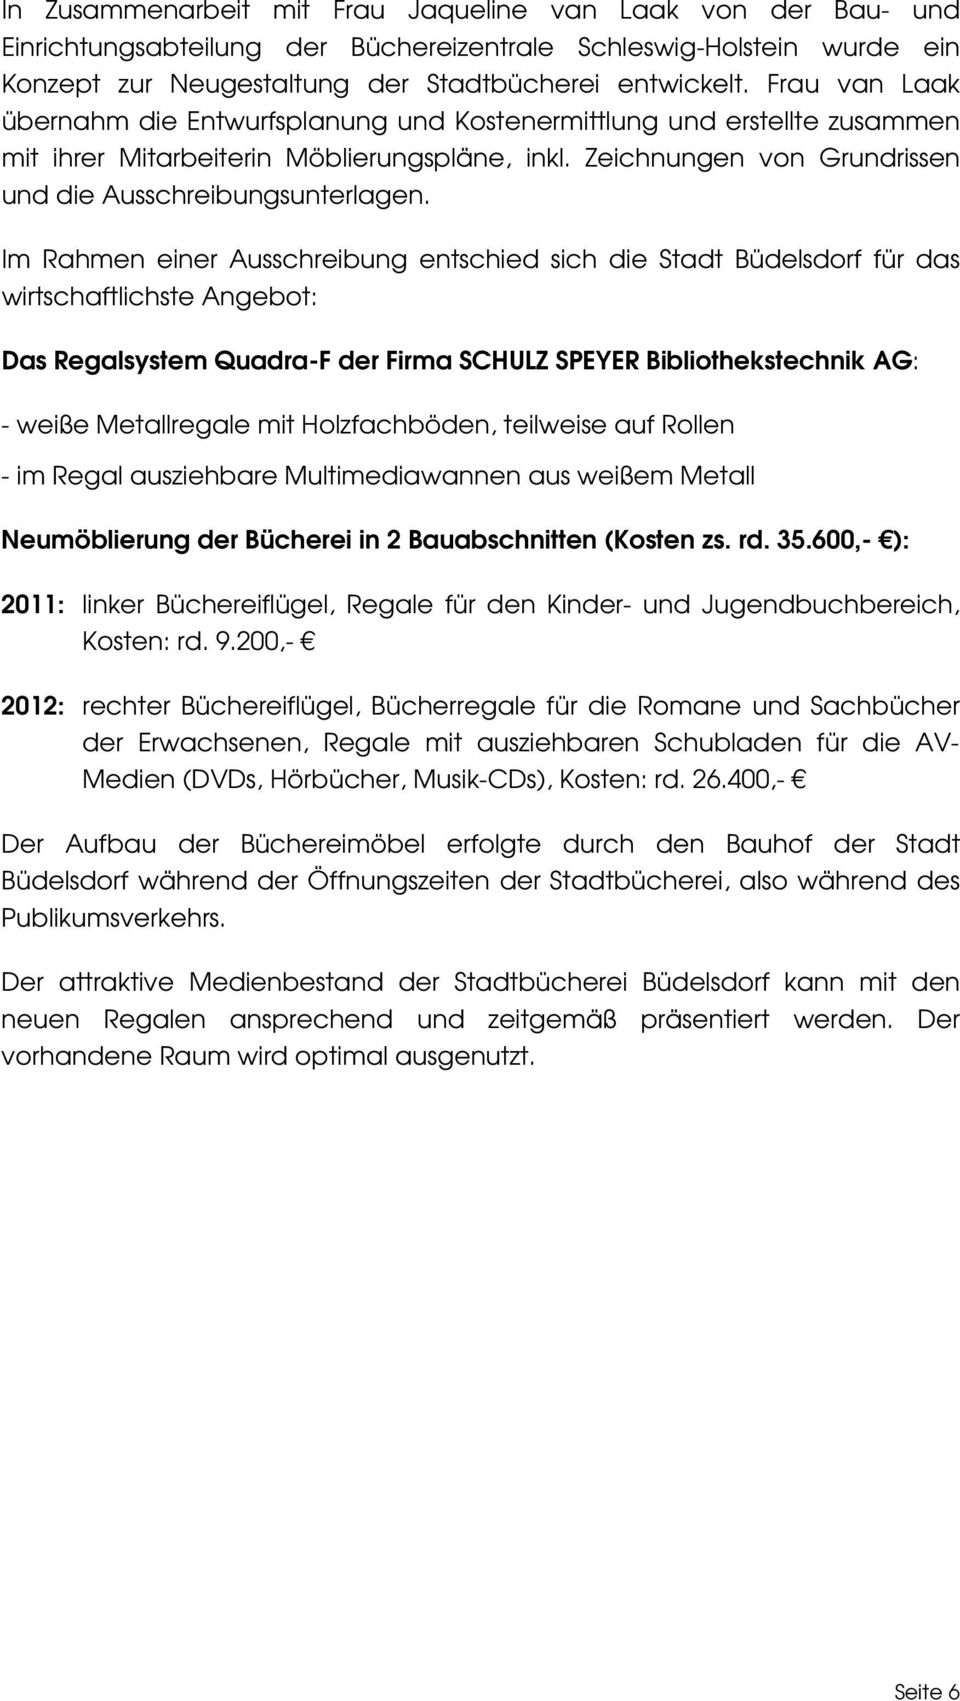 Im Rahmen einer Ausschreibung entschied sich die Stadt Büdelsdorf für das wirtschaftlichste Angebot: Das Regalsystem Quadra-F der Firma SCHULZ SPEYER Bibliothekstechnik AG: - weiße Metallregale mit